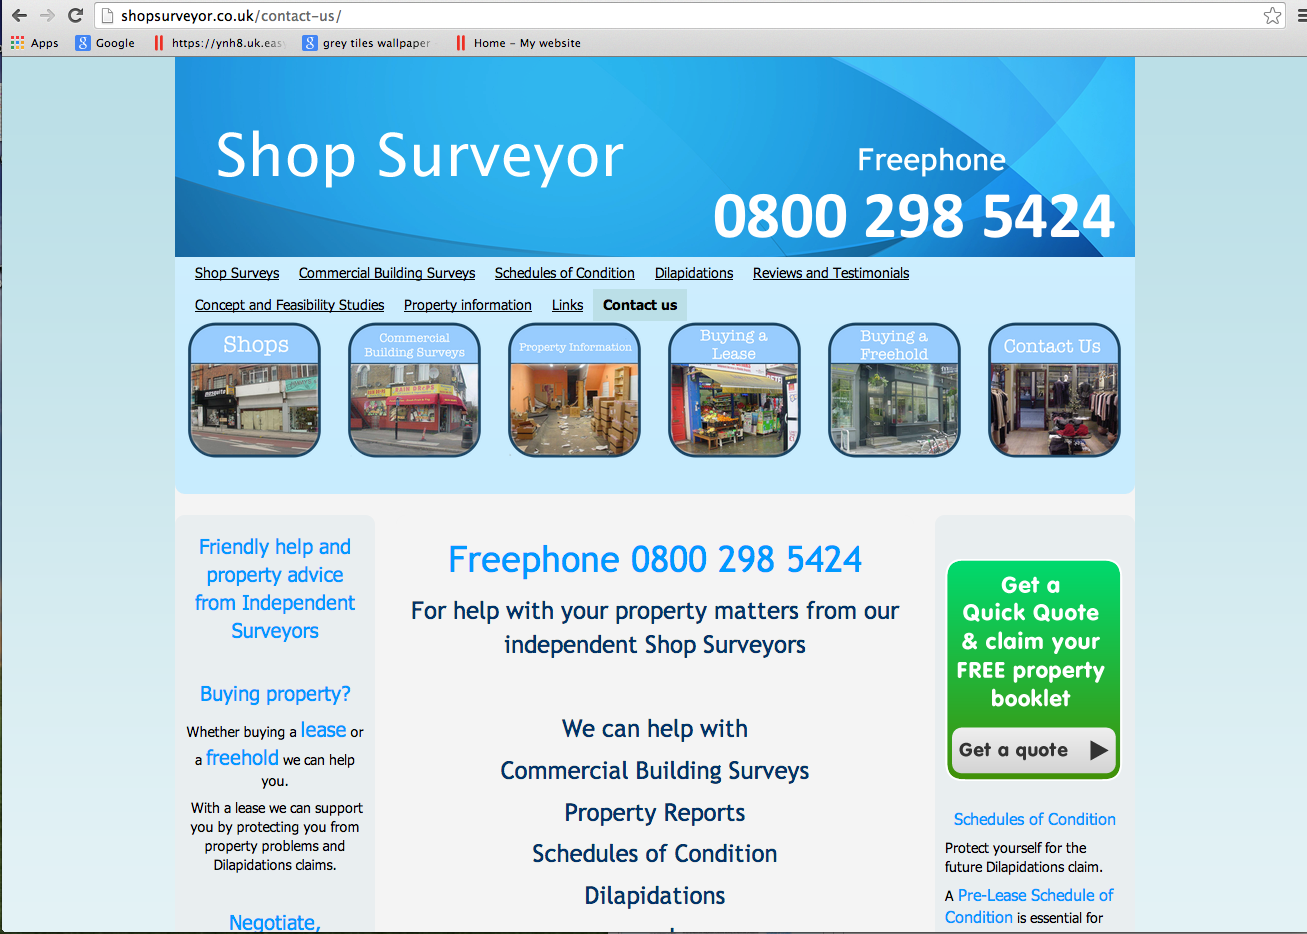 Shopsurveyor.co.uk - Contact Us